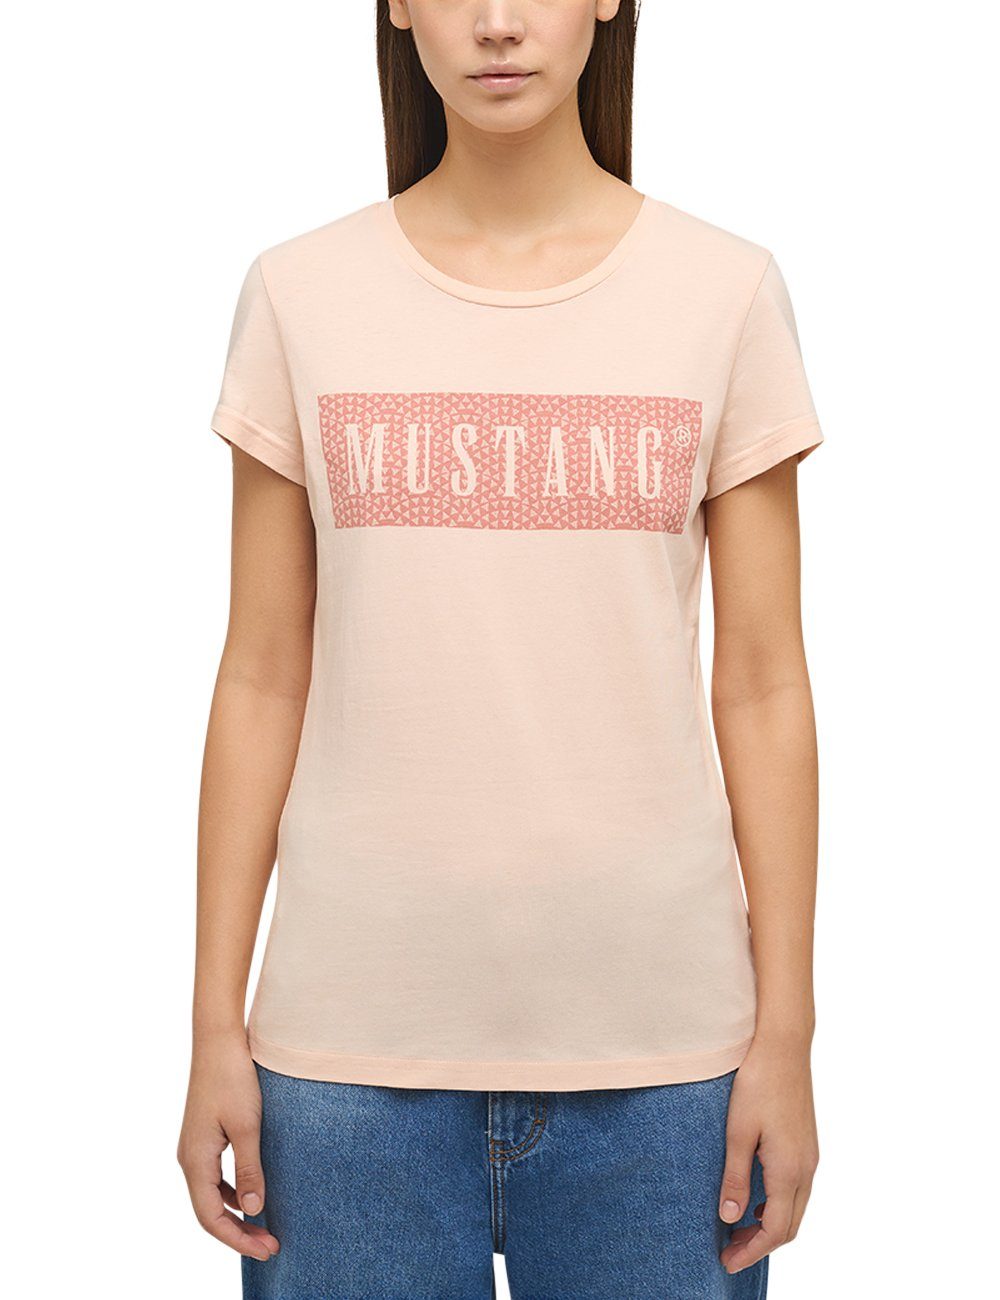 Mustang MUSTANG T-Shirt Kurzarmshirt hellrosa Print-Shirt